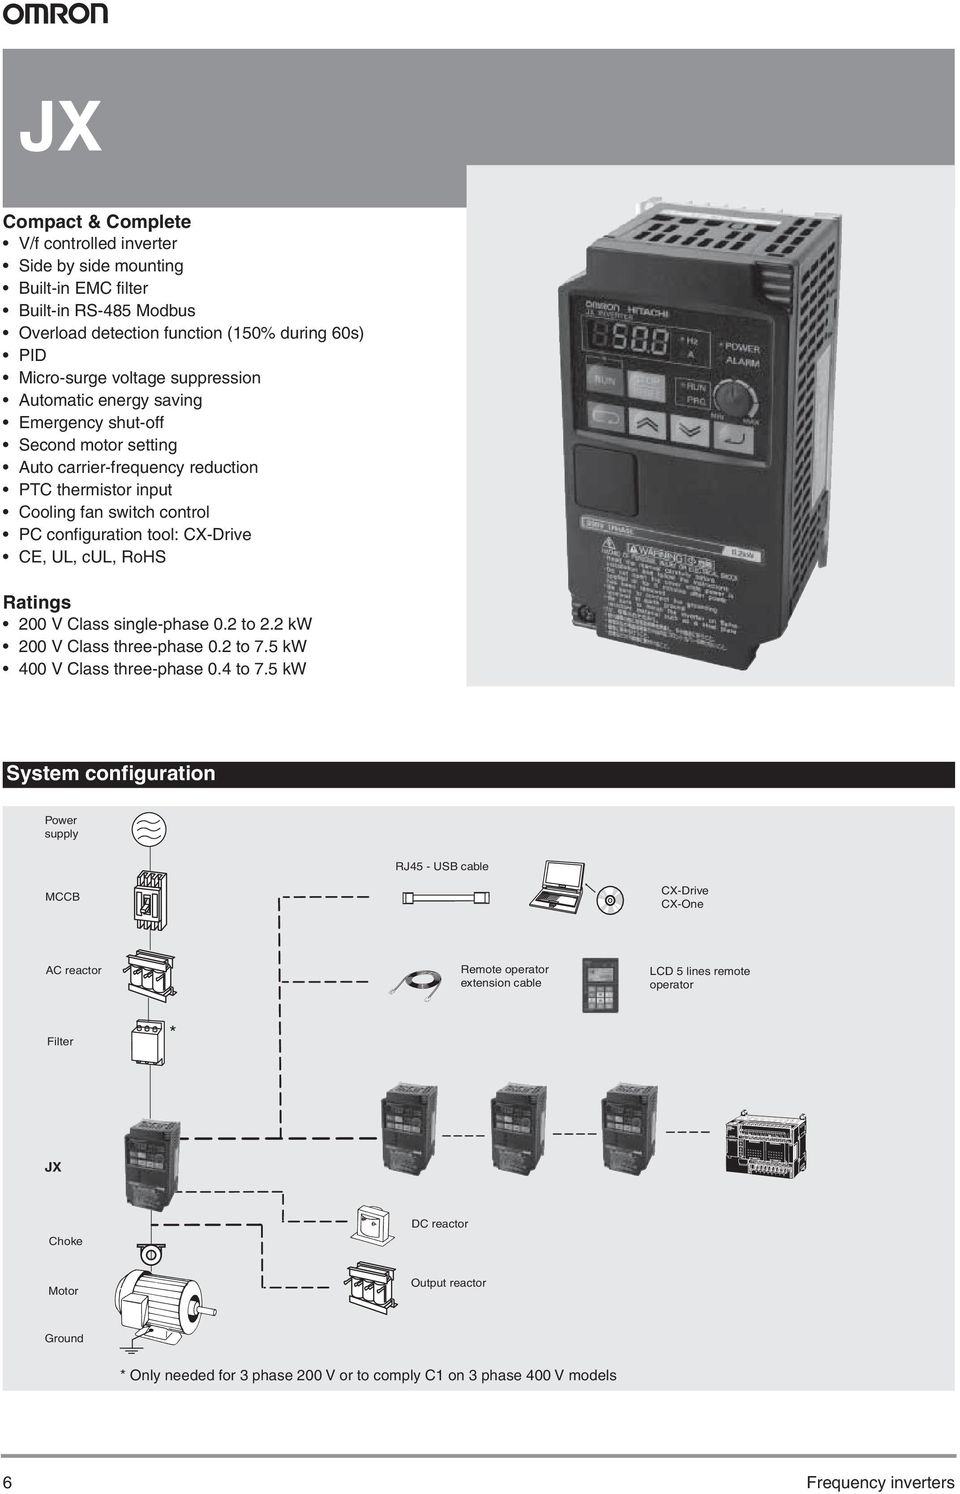 JX frekvenciaváltó. Kompakt és tökéletes - PDF Free Download